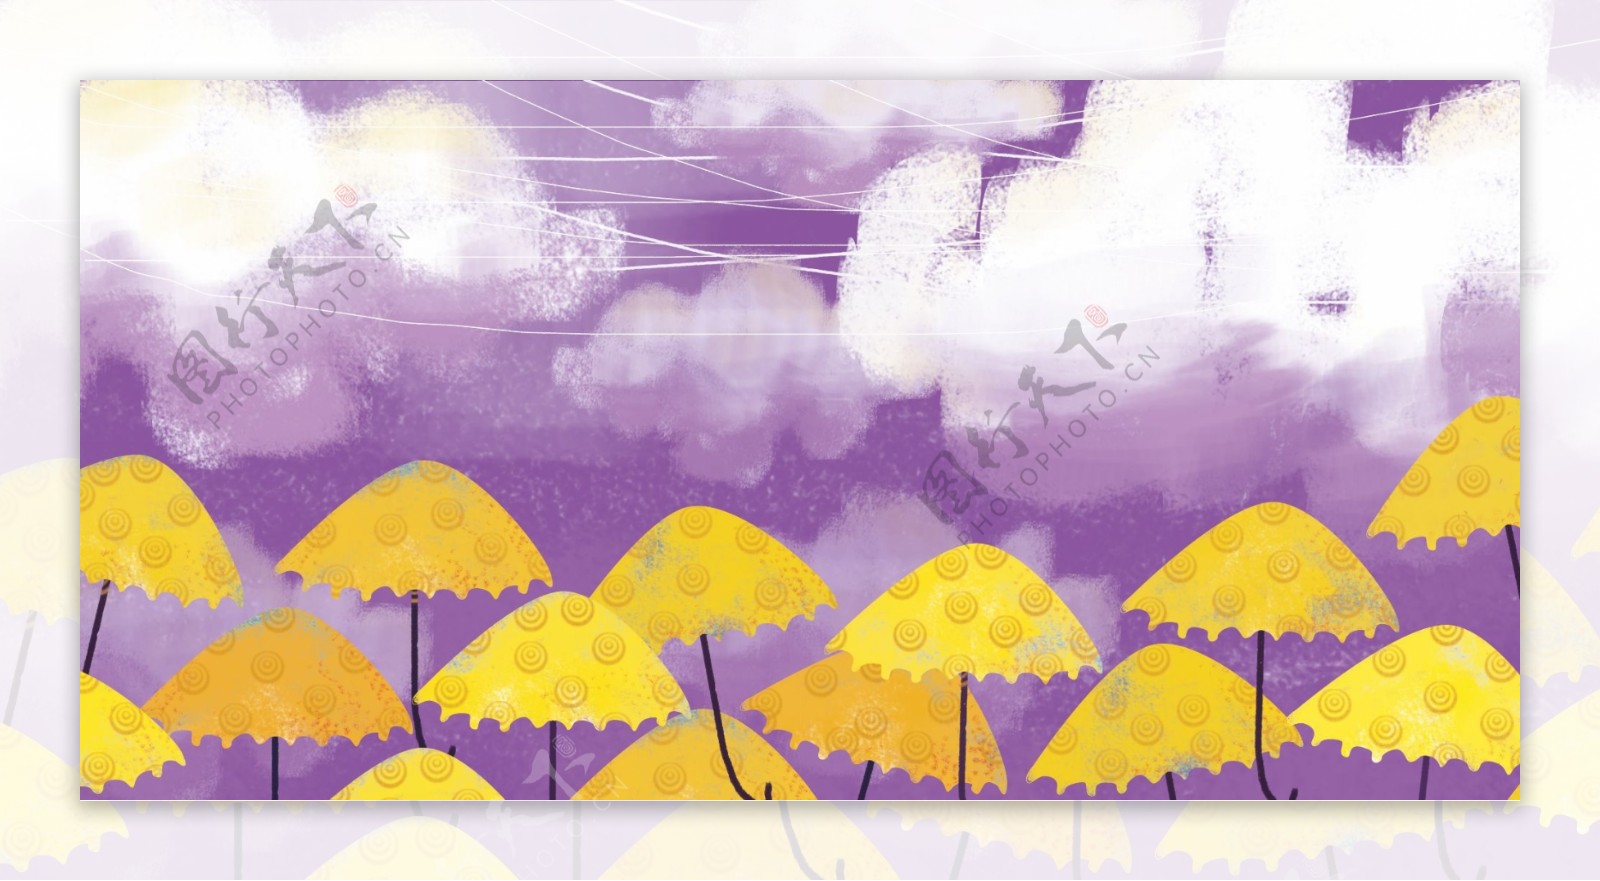 紫色太空下的伞噪点插画背景